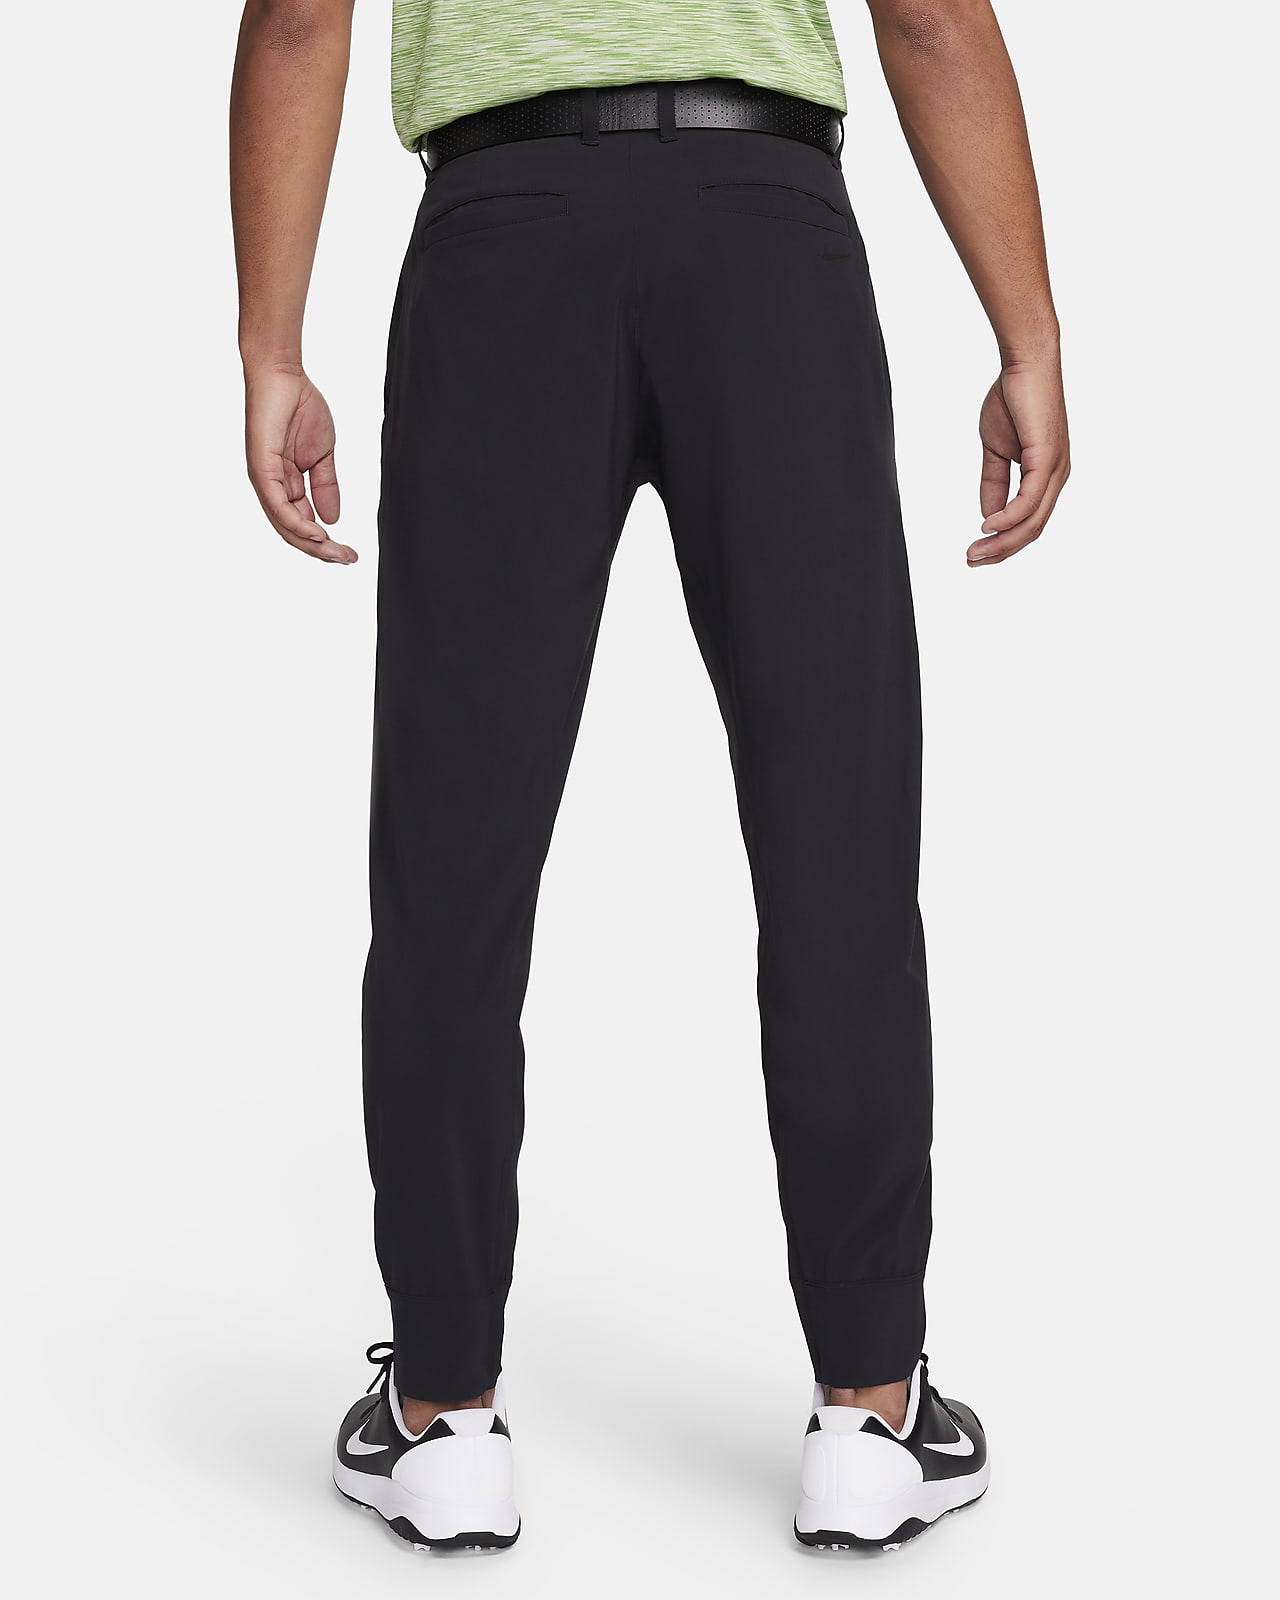 Nike Men's Tour Repel 5-Pocket Slim Golf Pants